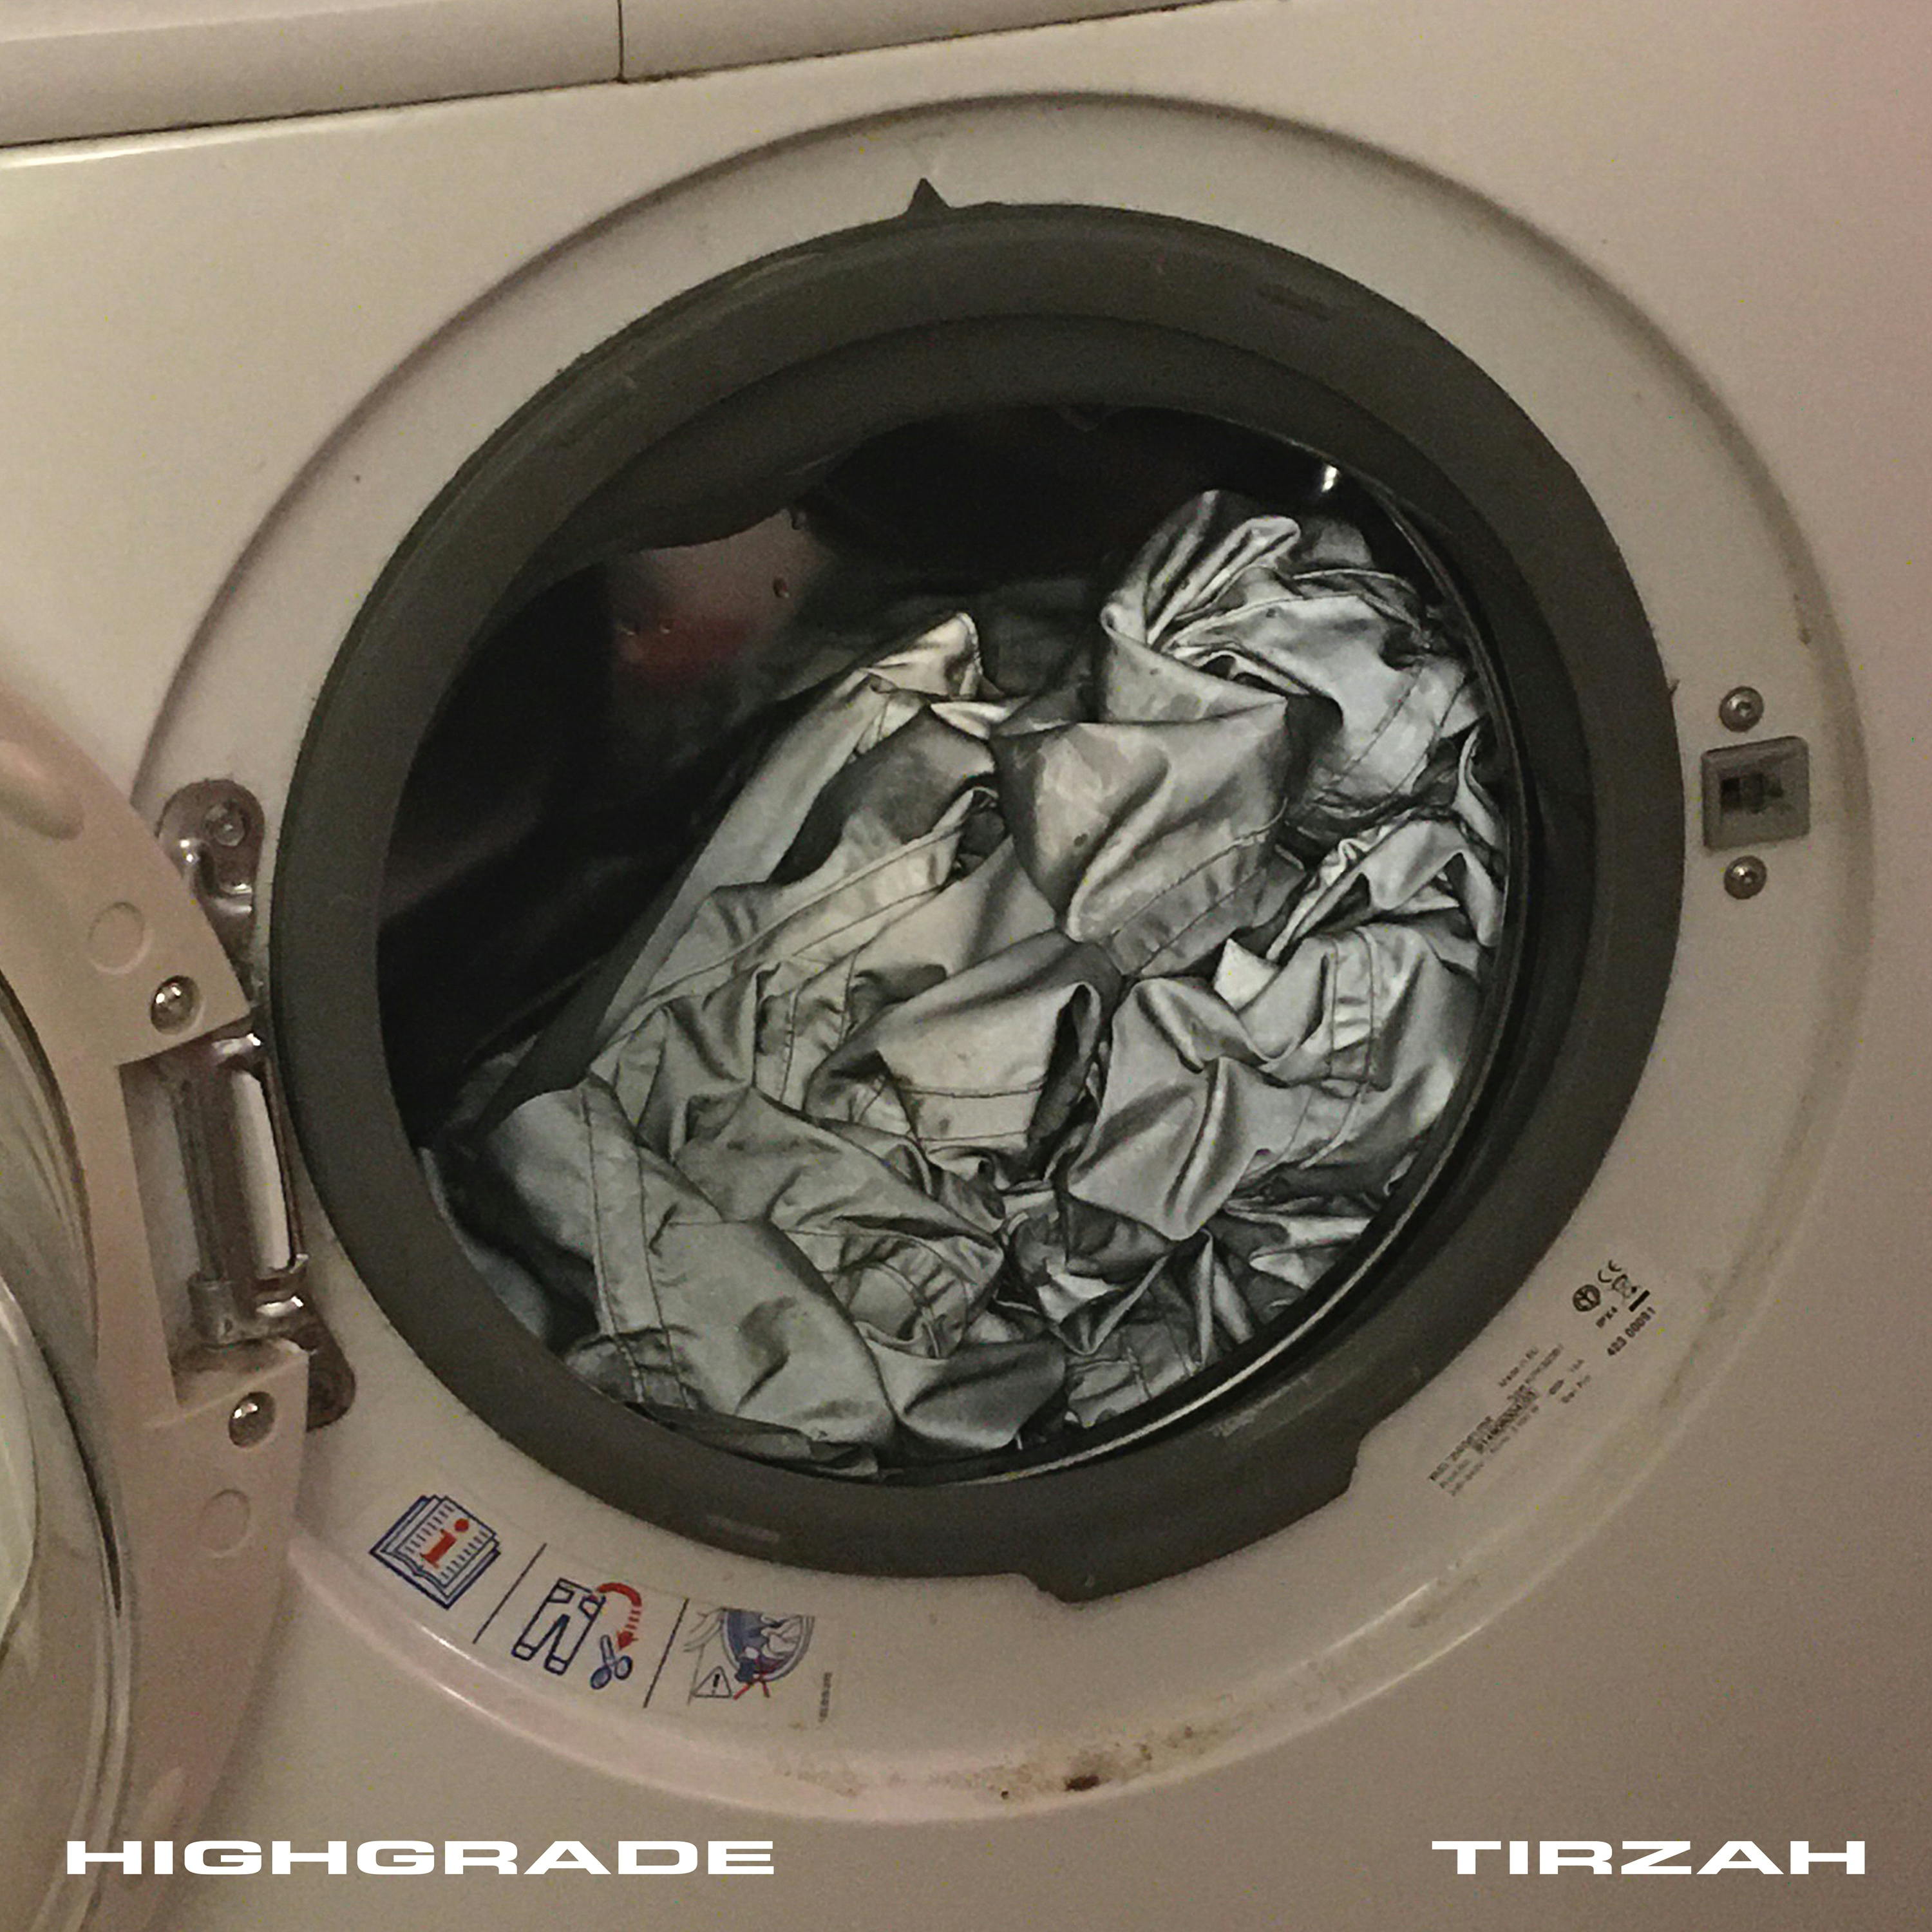 Album artwork for Album artwork for Highgrade by Tirzah by Highgrade - Tirzah